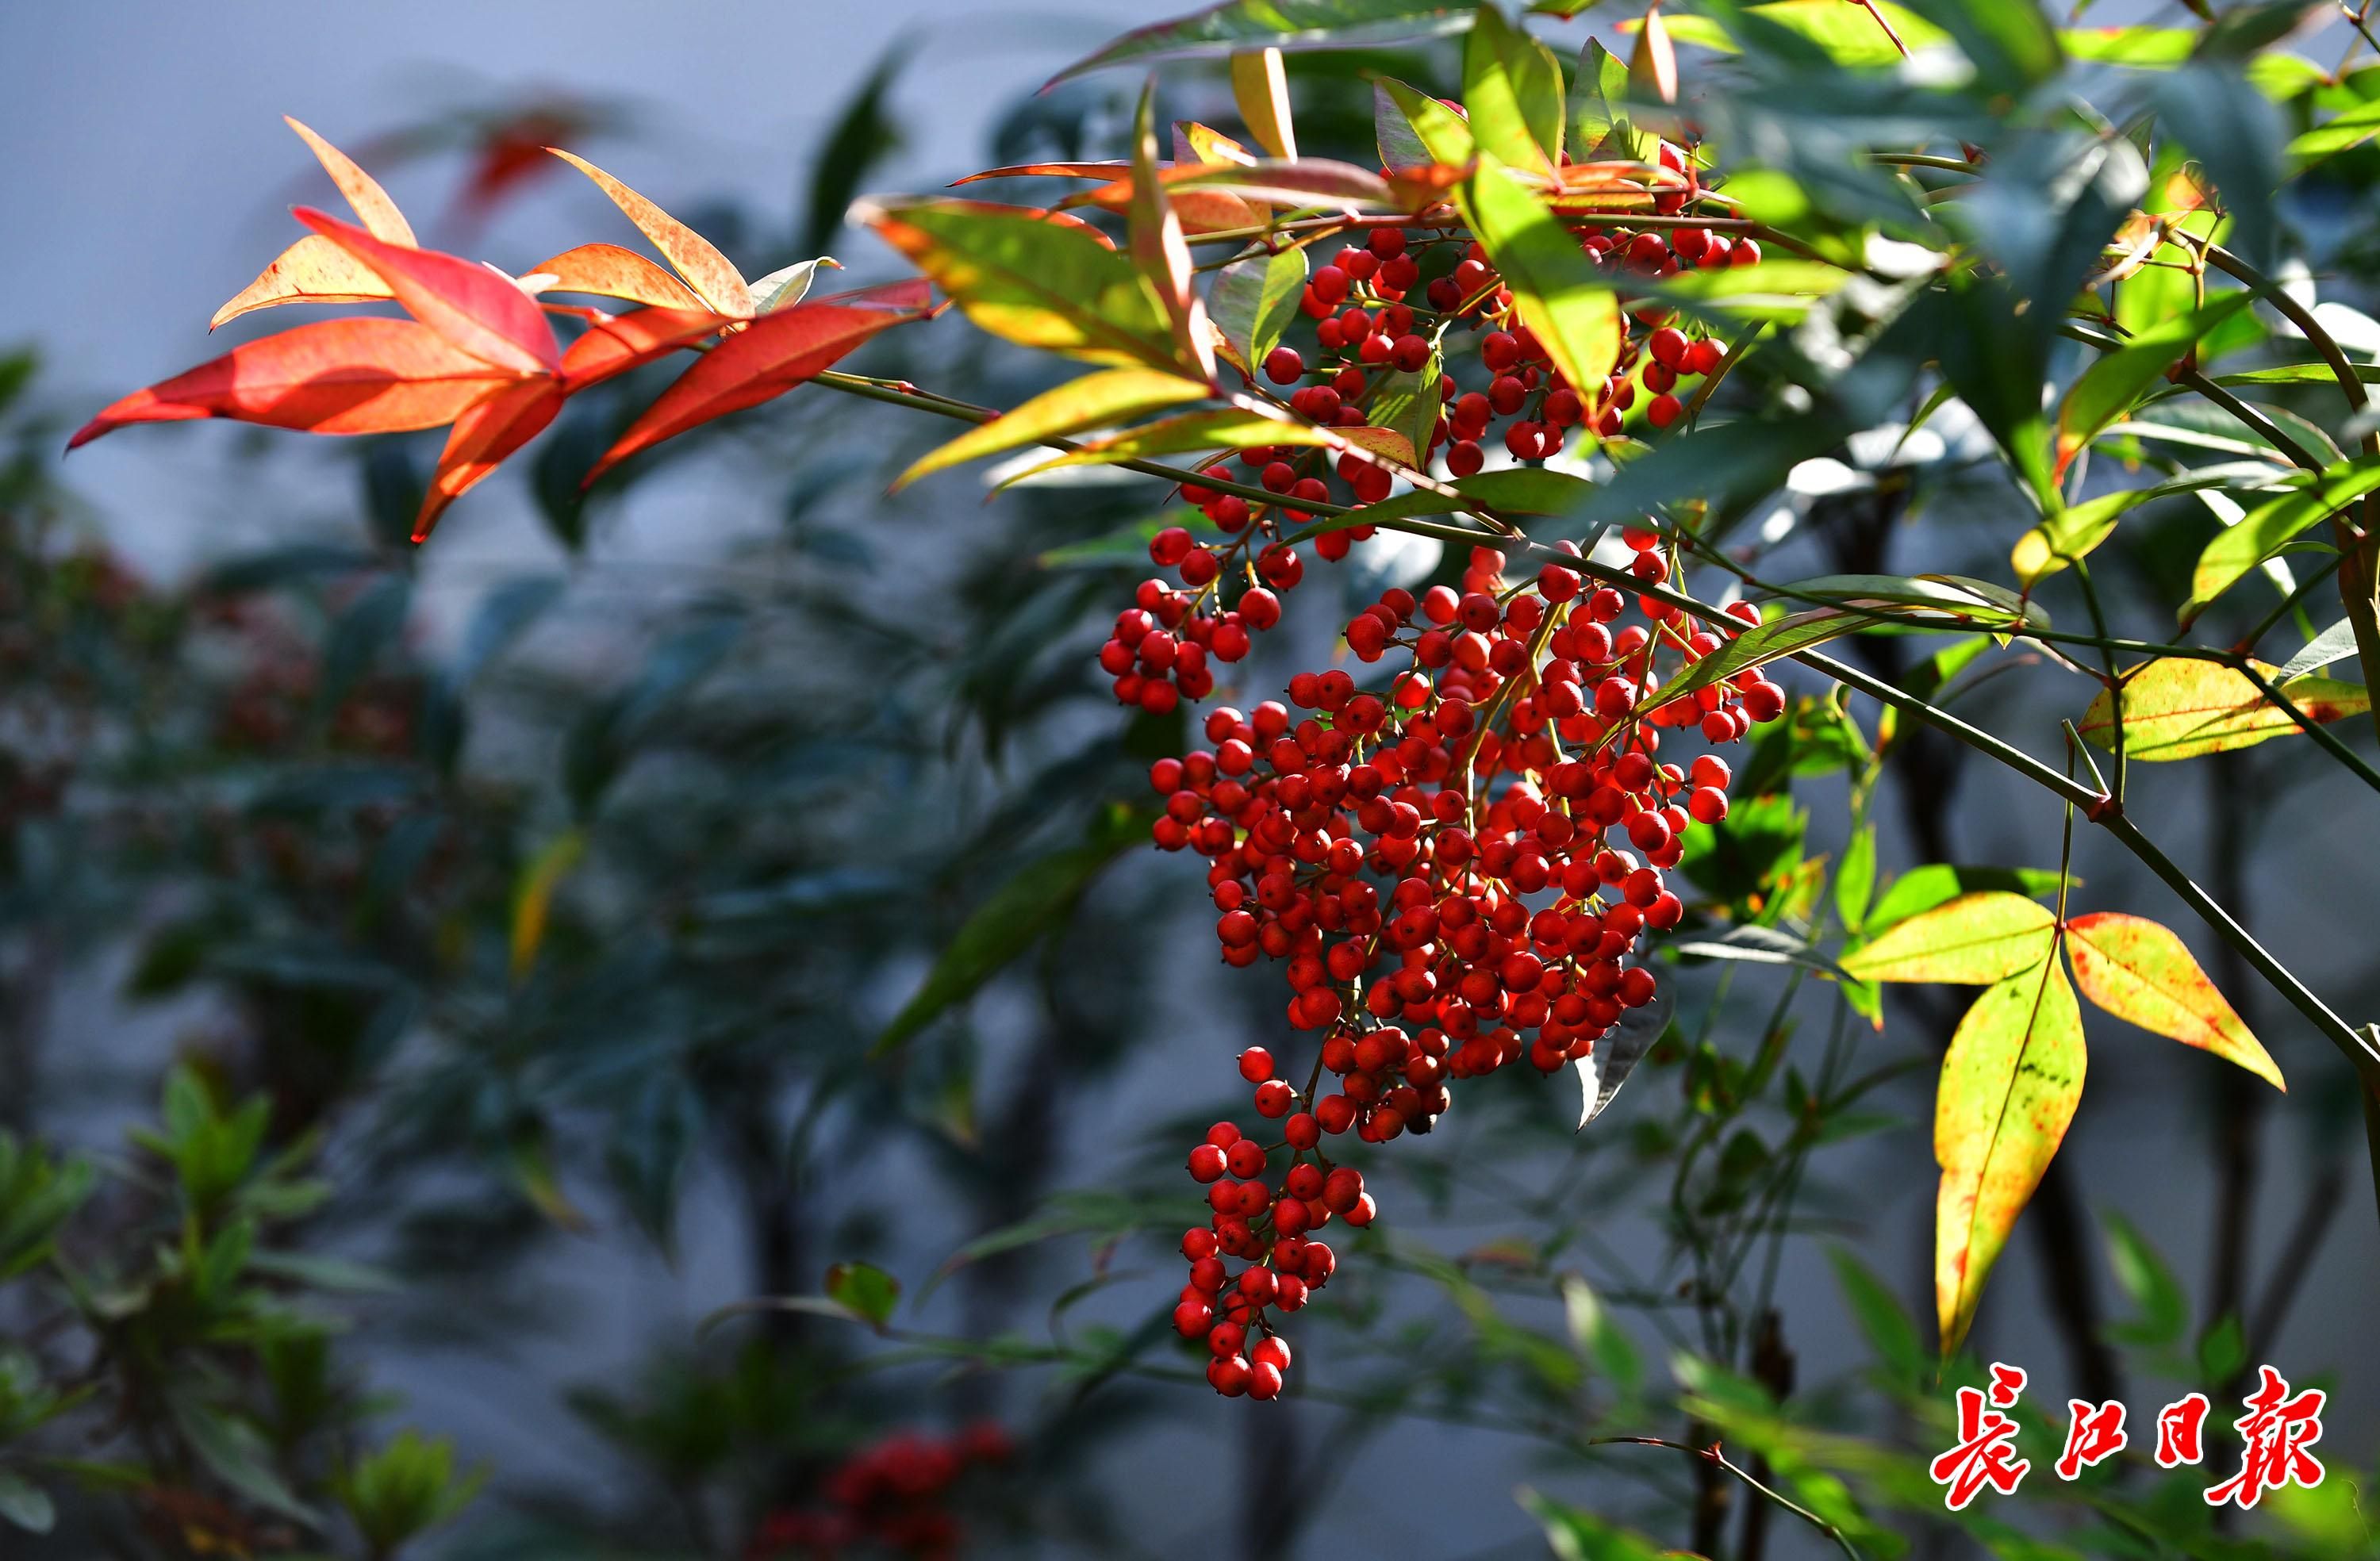 11月12日,沙湖公园的一株南天竹上,挂着沉甸甸红果实